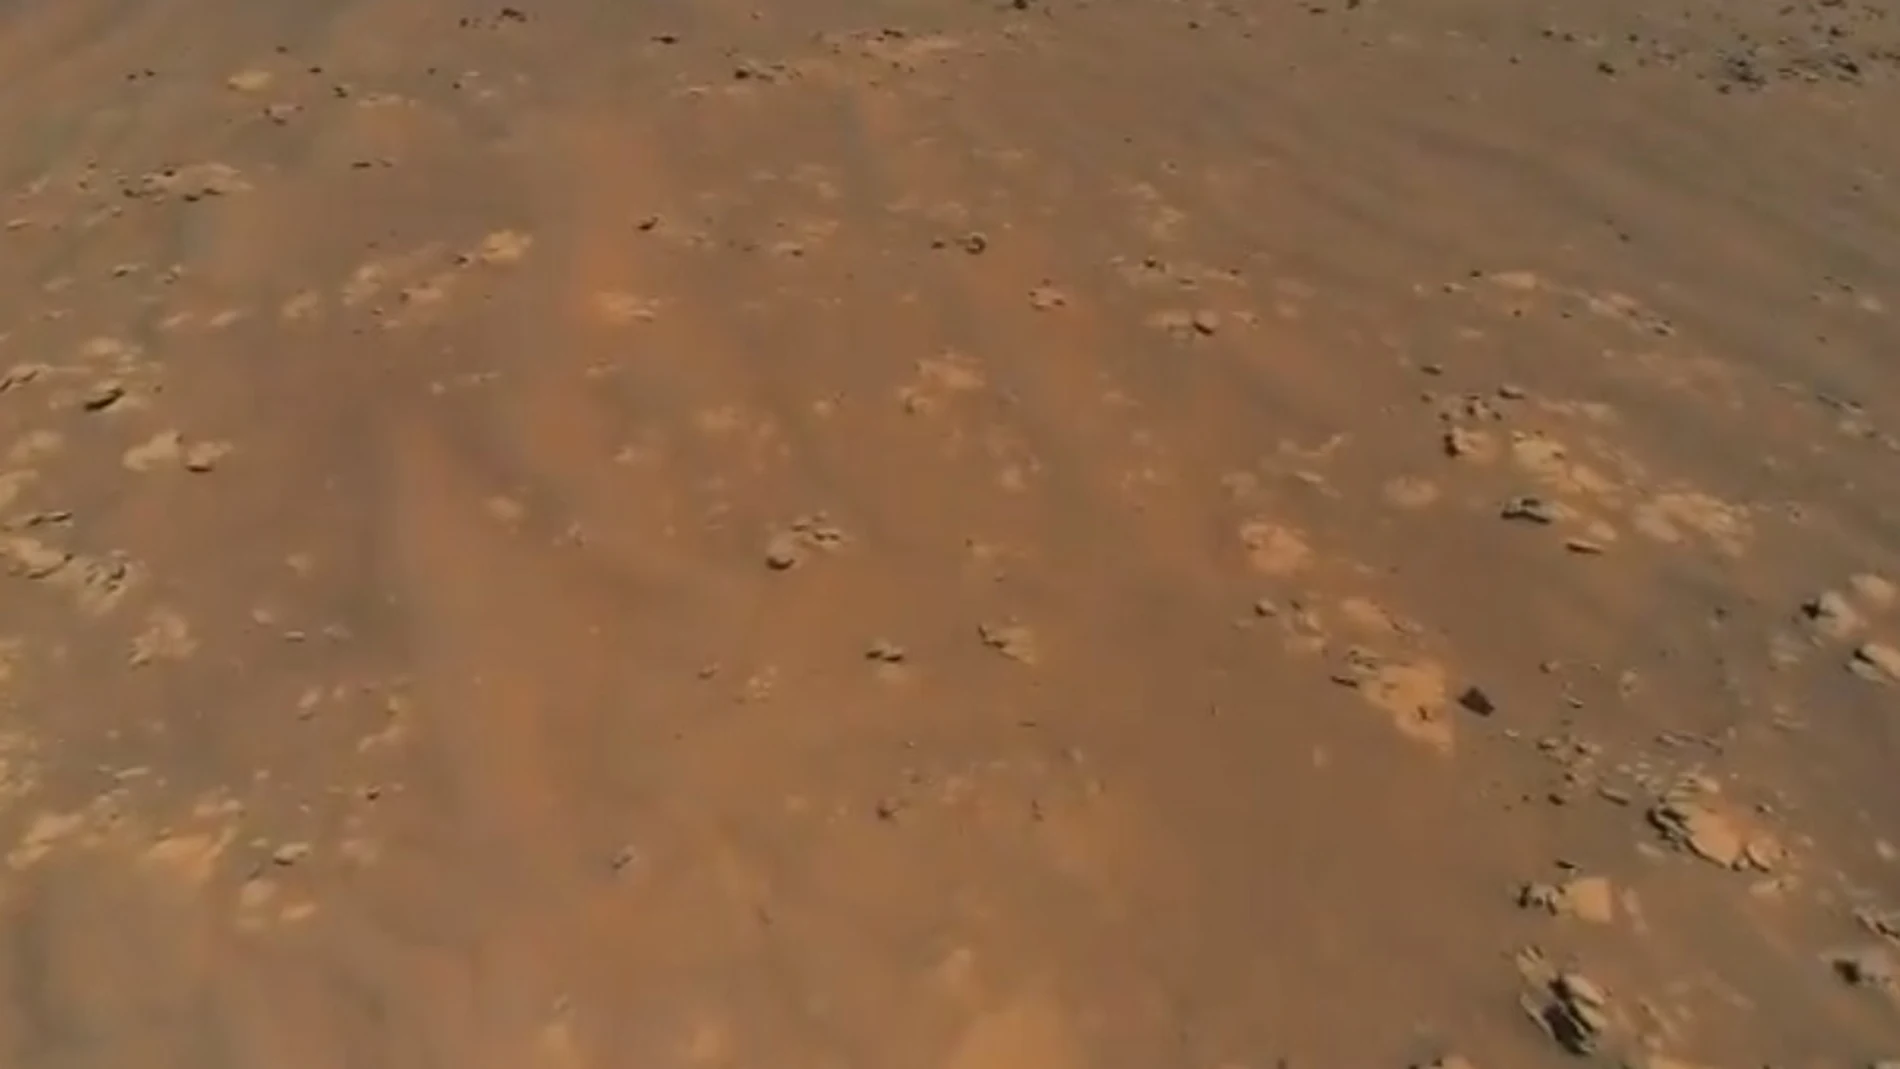 Imagen de Marte captada por la NASA